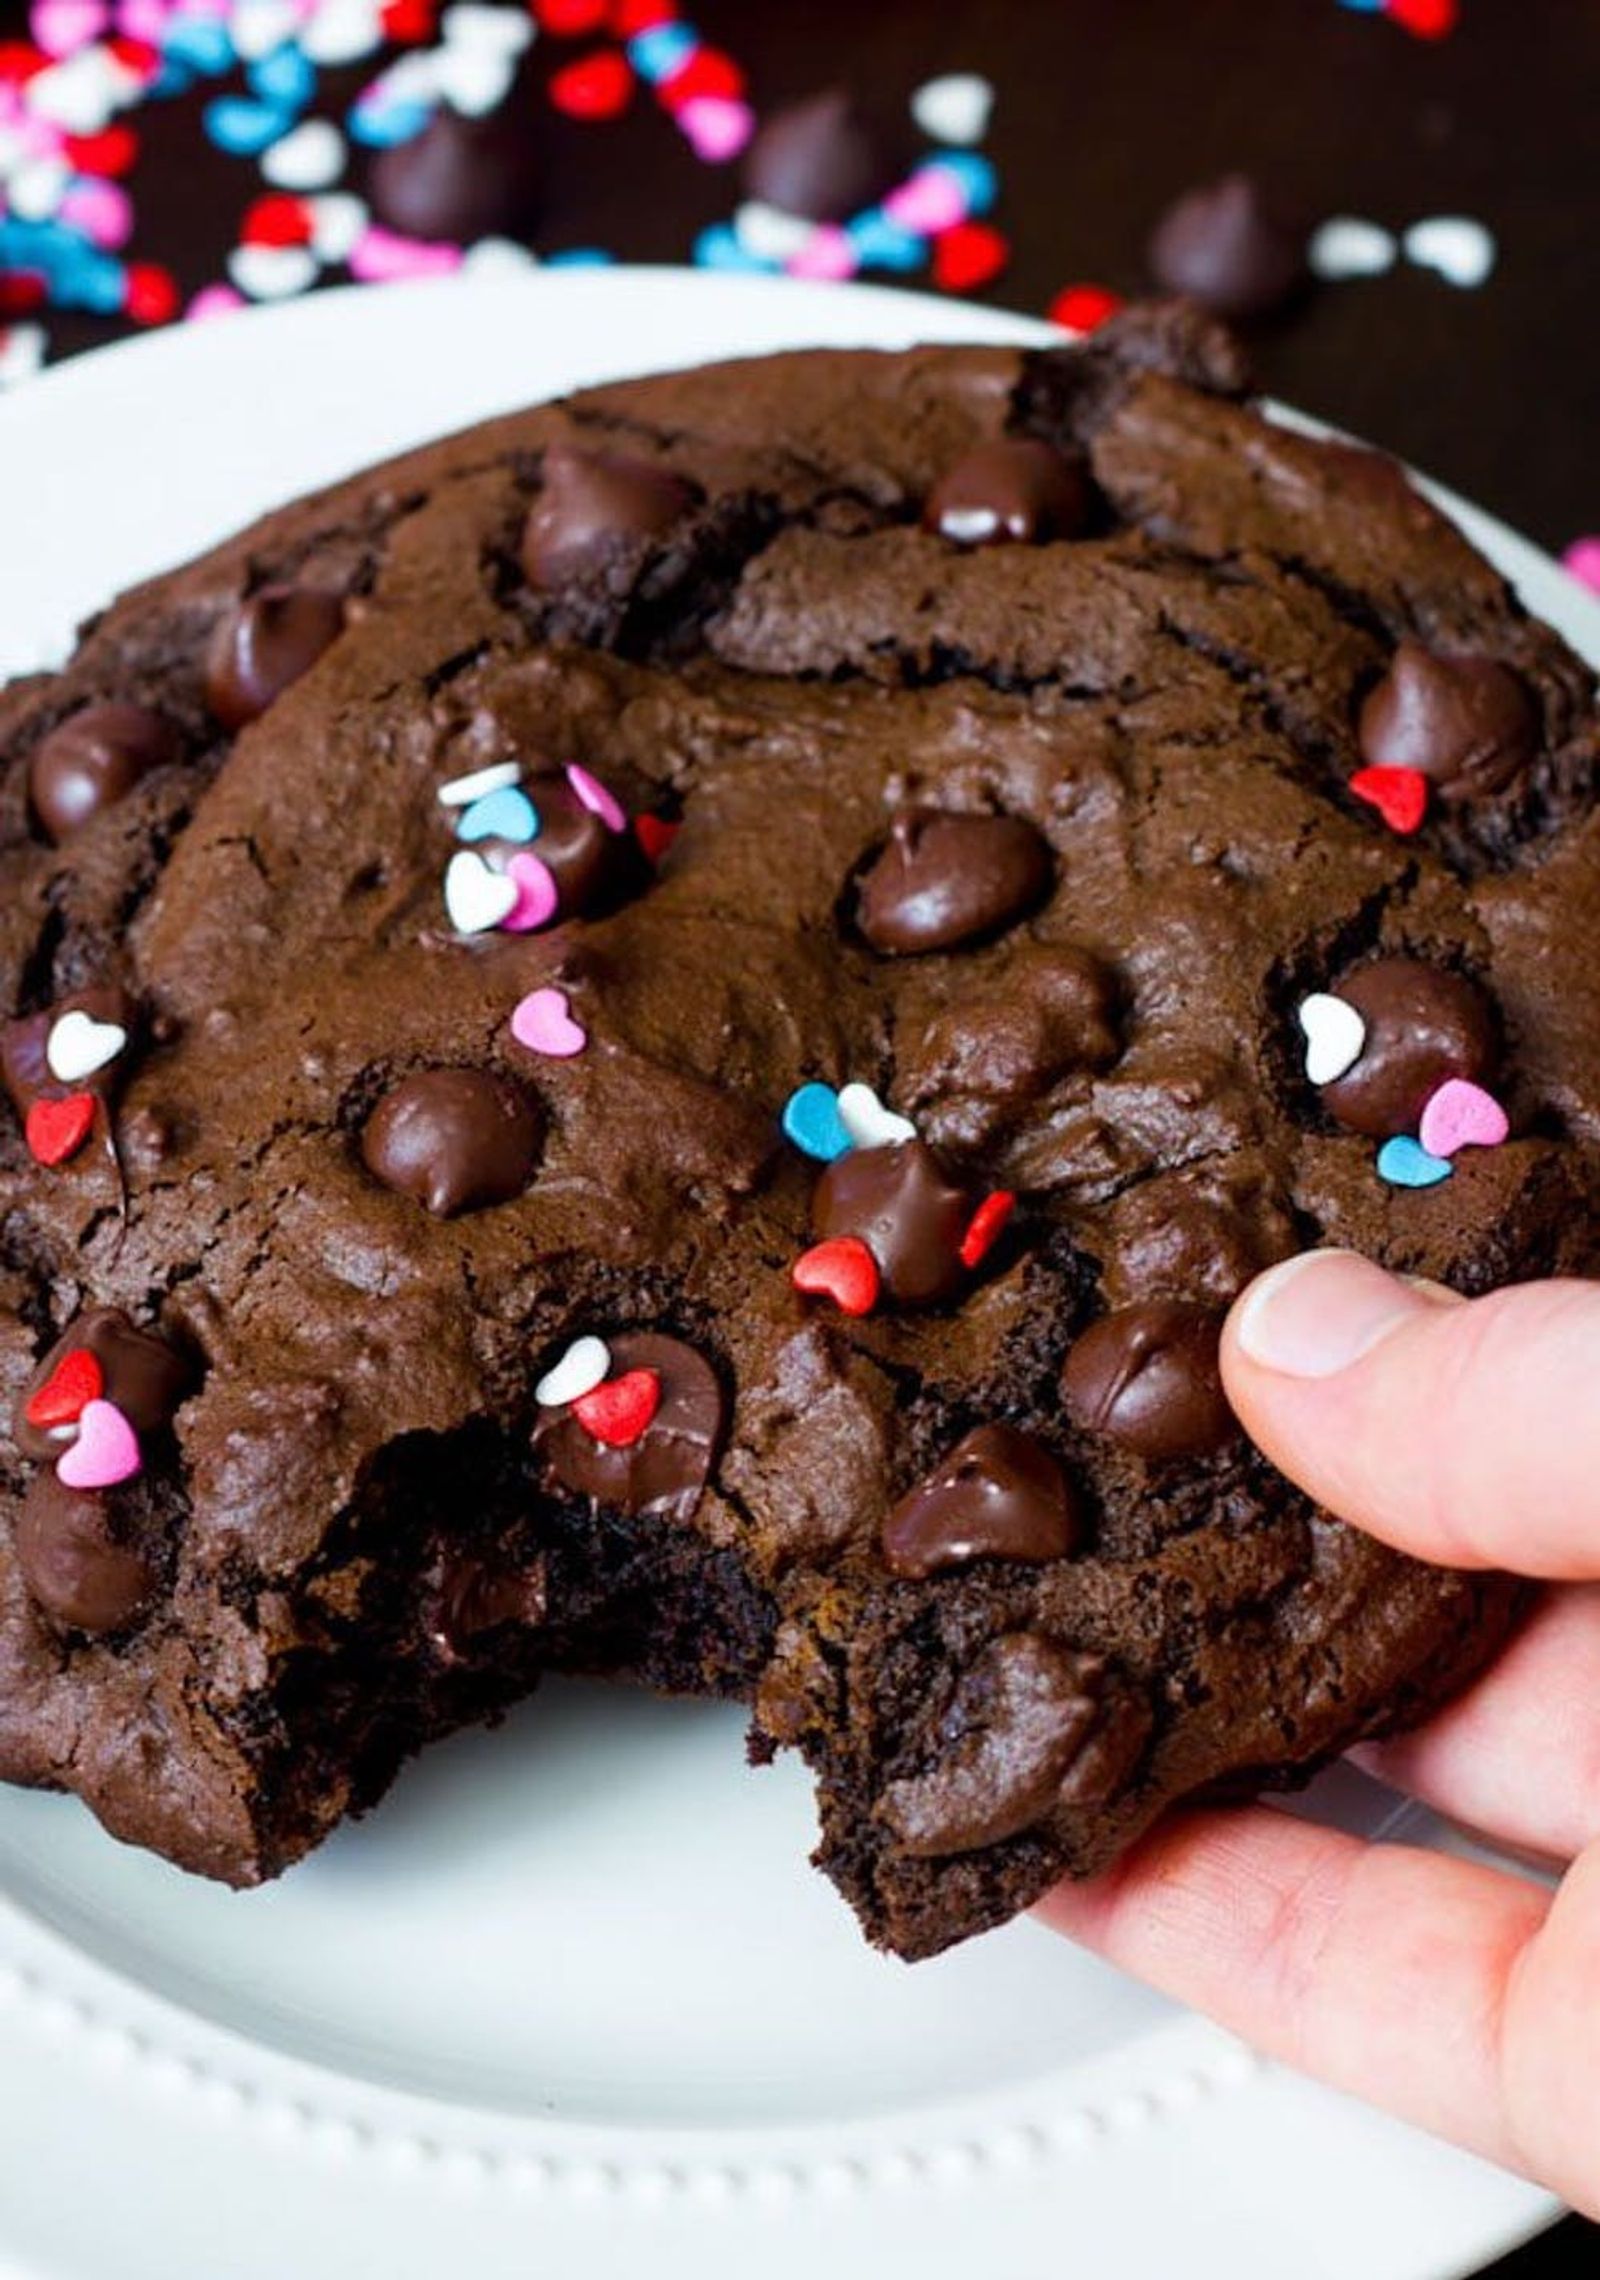 XXL Death by Chocolate Cookie Valentine's Day Dessert Recipe